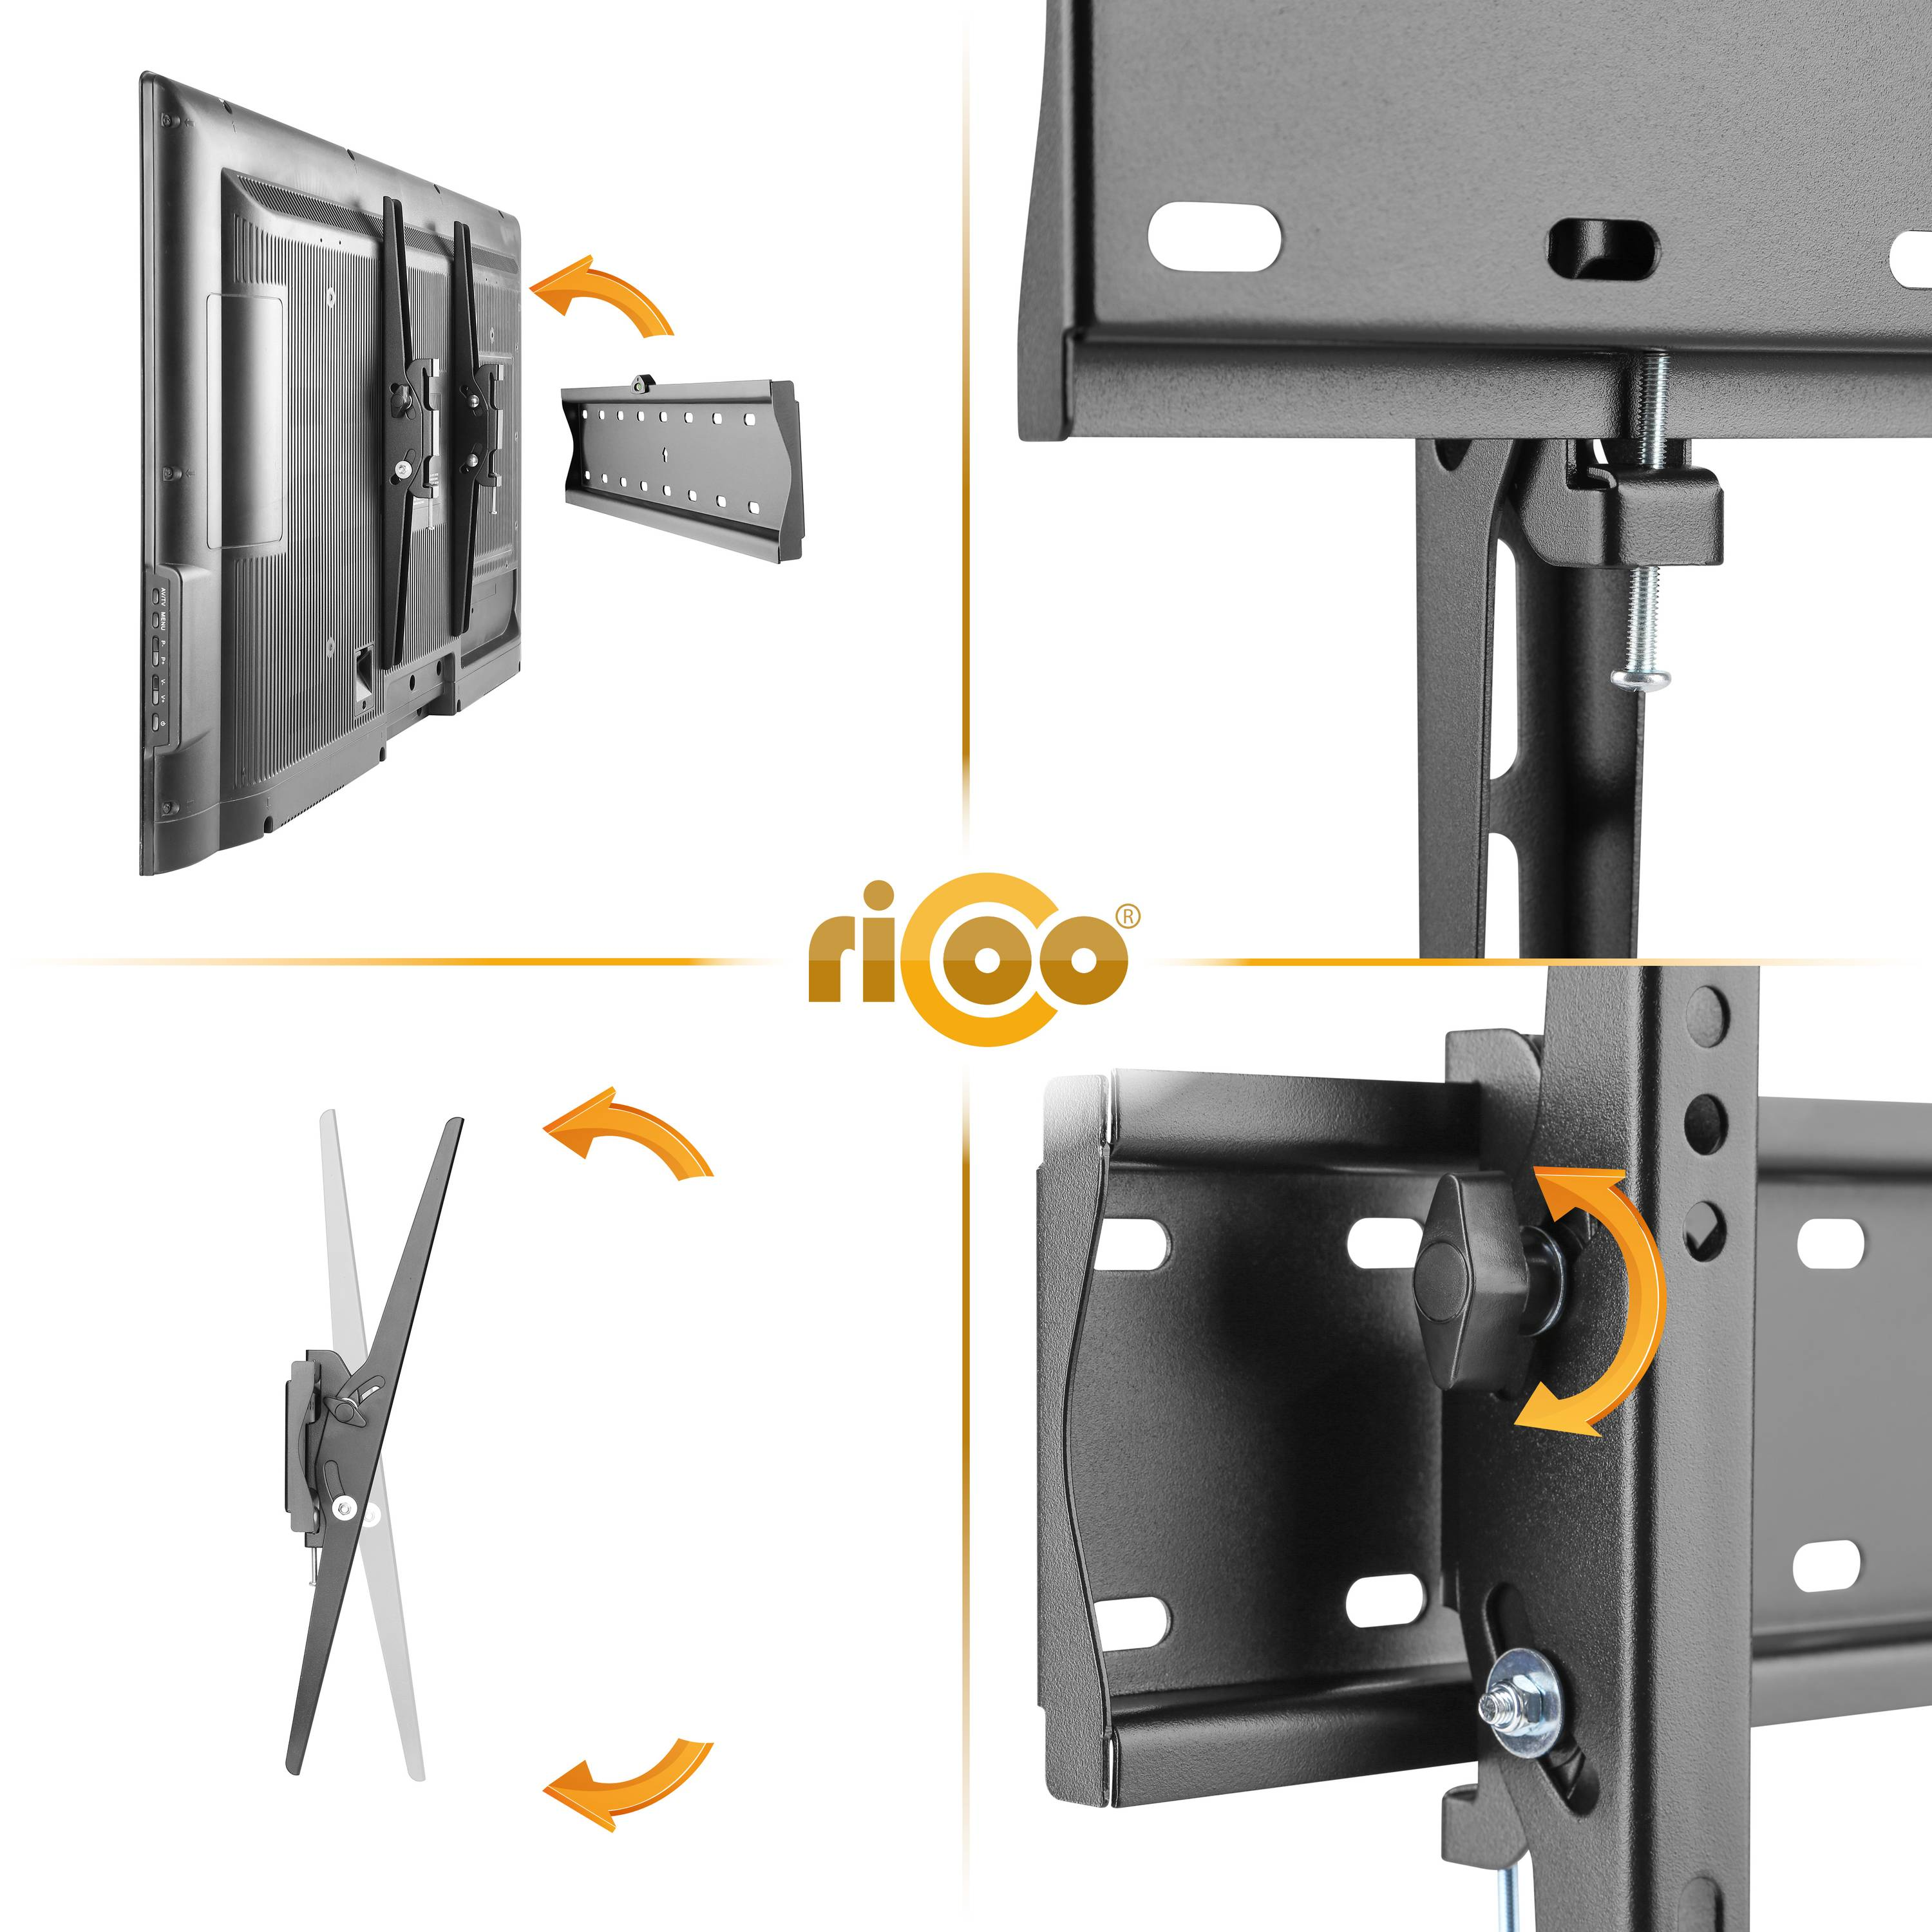 RICOO N2144 flach neigbar Schwarz TV 400 für Wandhalterung, auch x curved Halterung Fernseher VESA Wand bis 400 universal